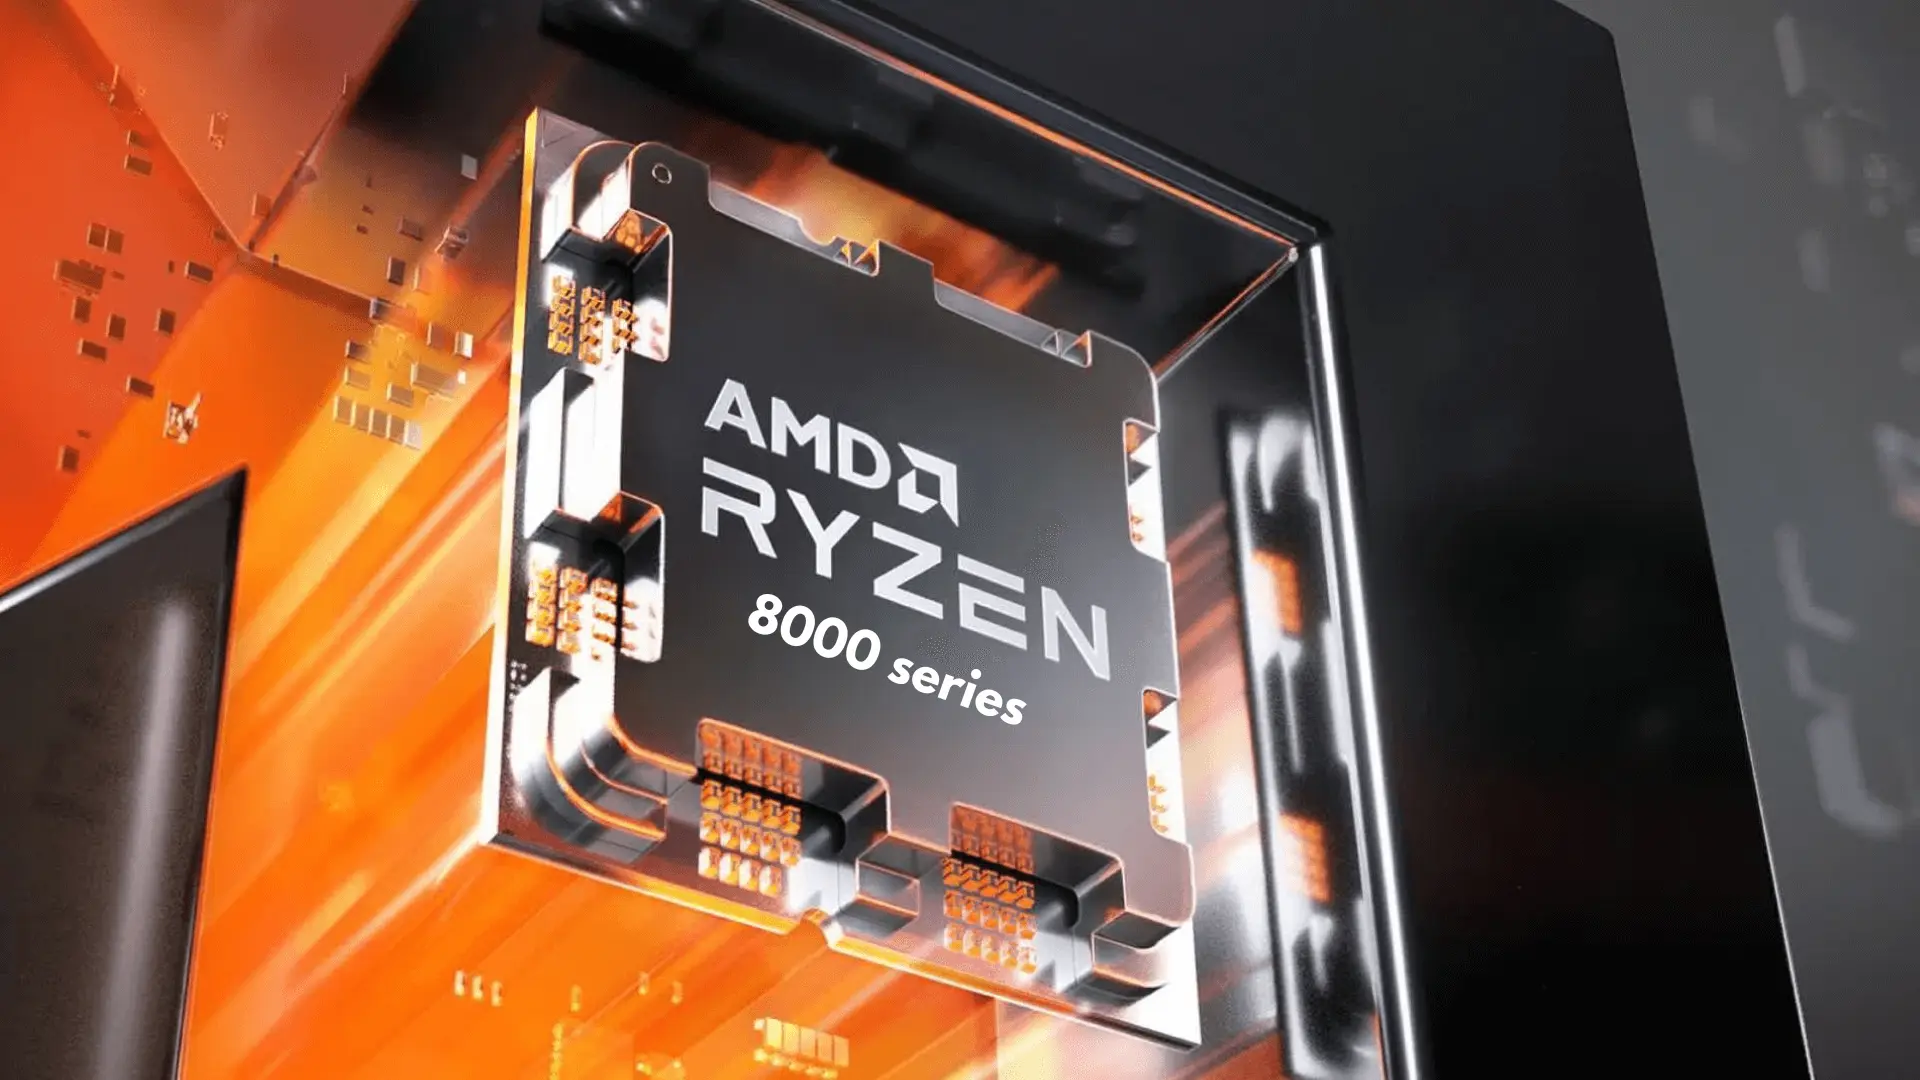 AMD Ryzen 8000 Strix Mobile Processor To Feature Hybrid Architecture, 4 P+E Cores